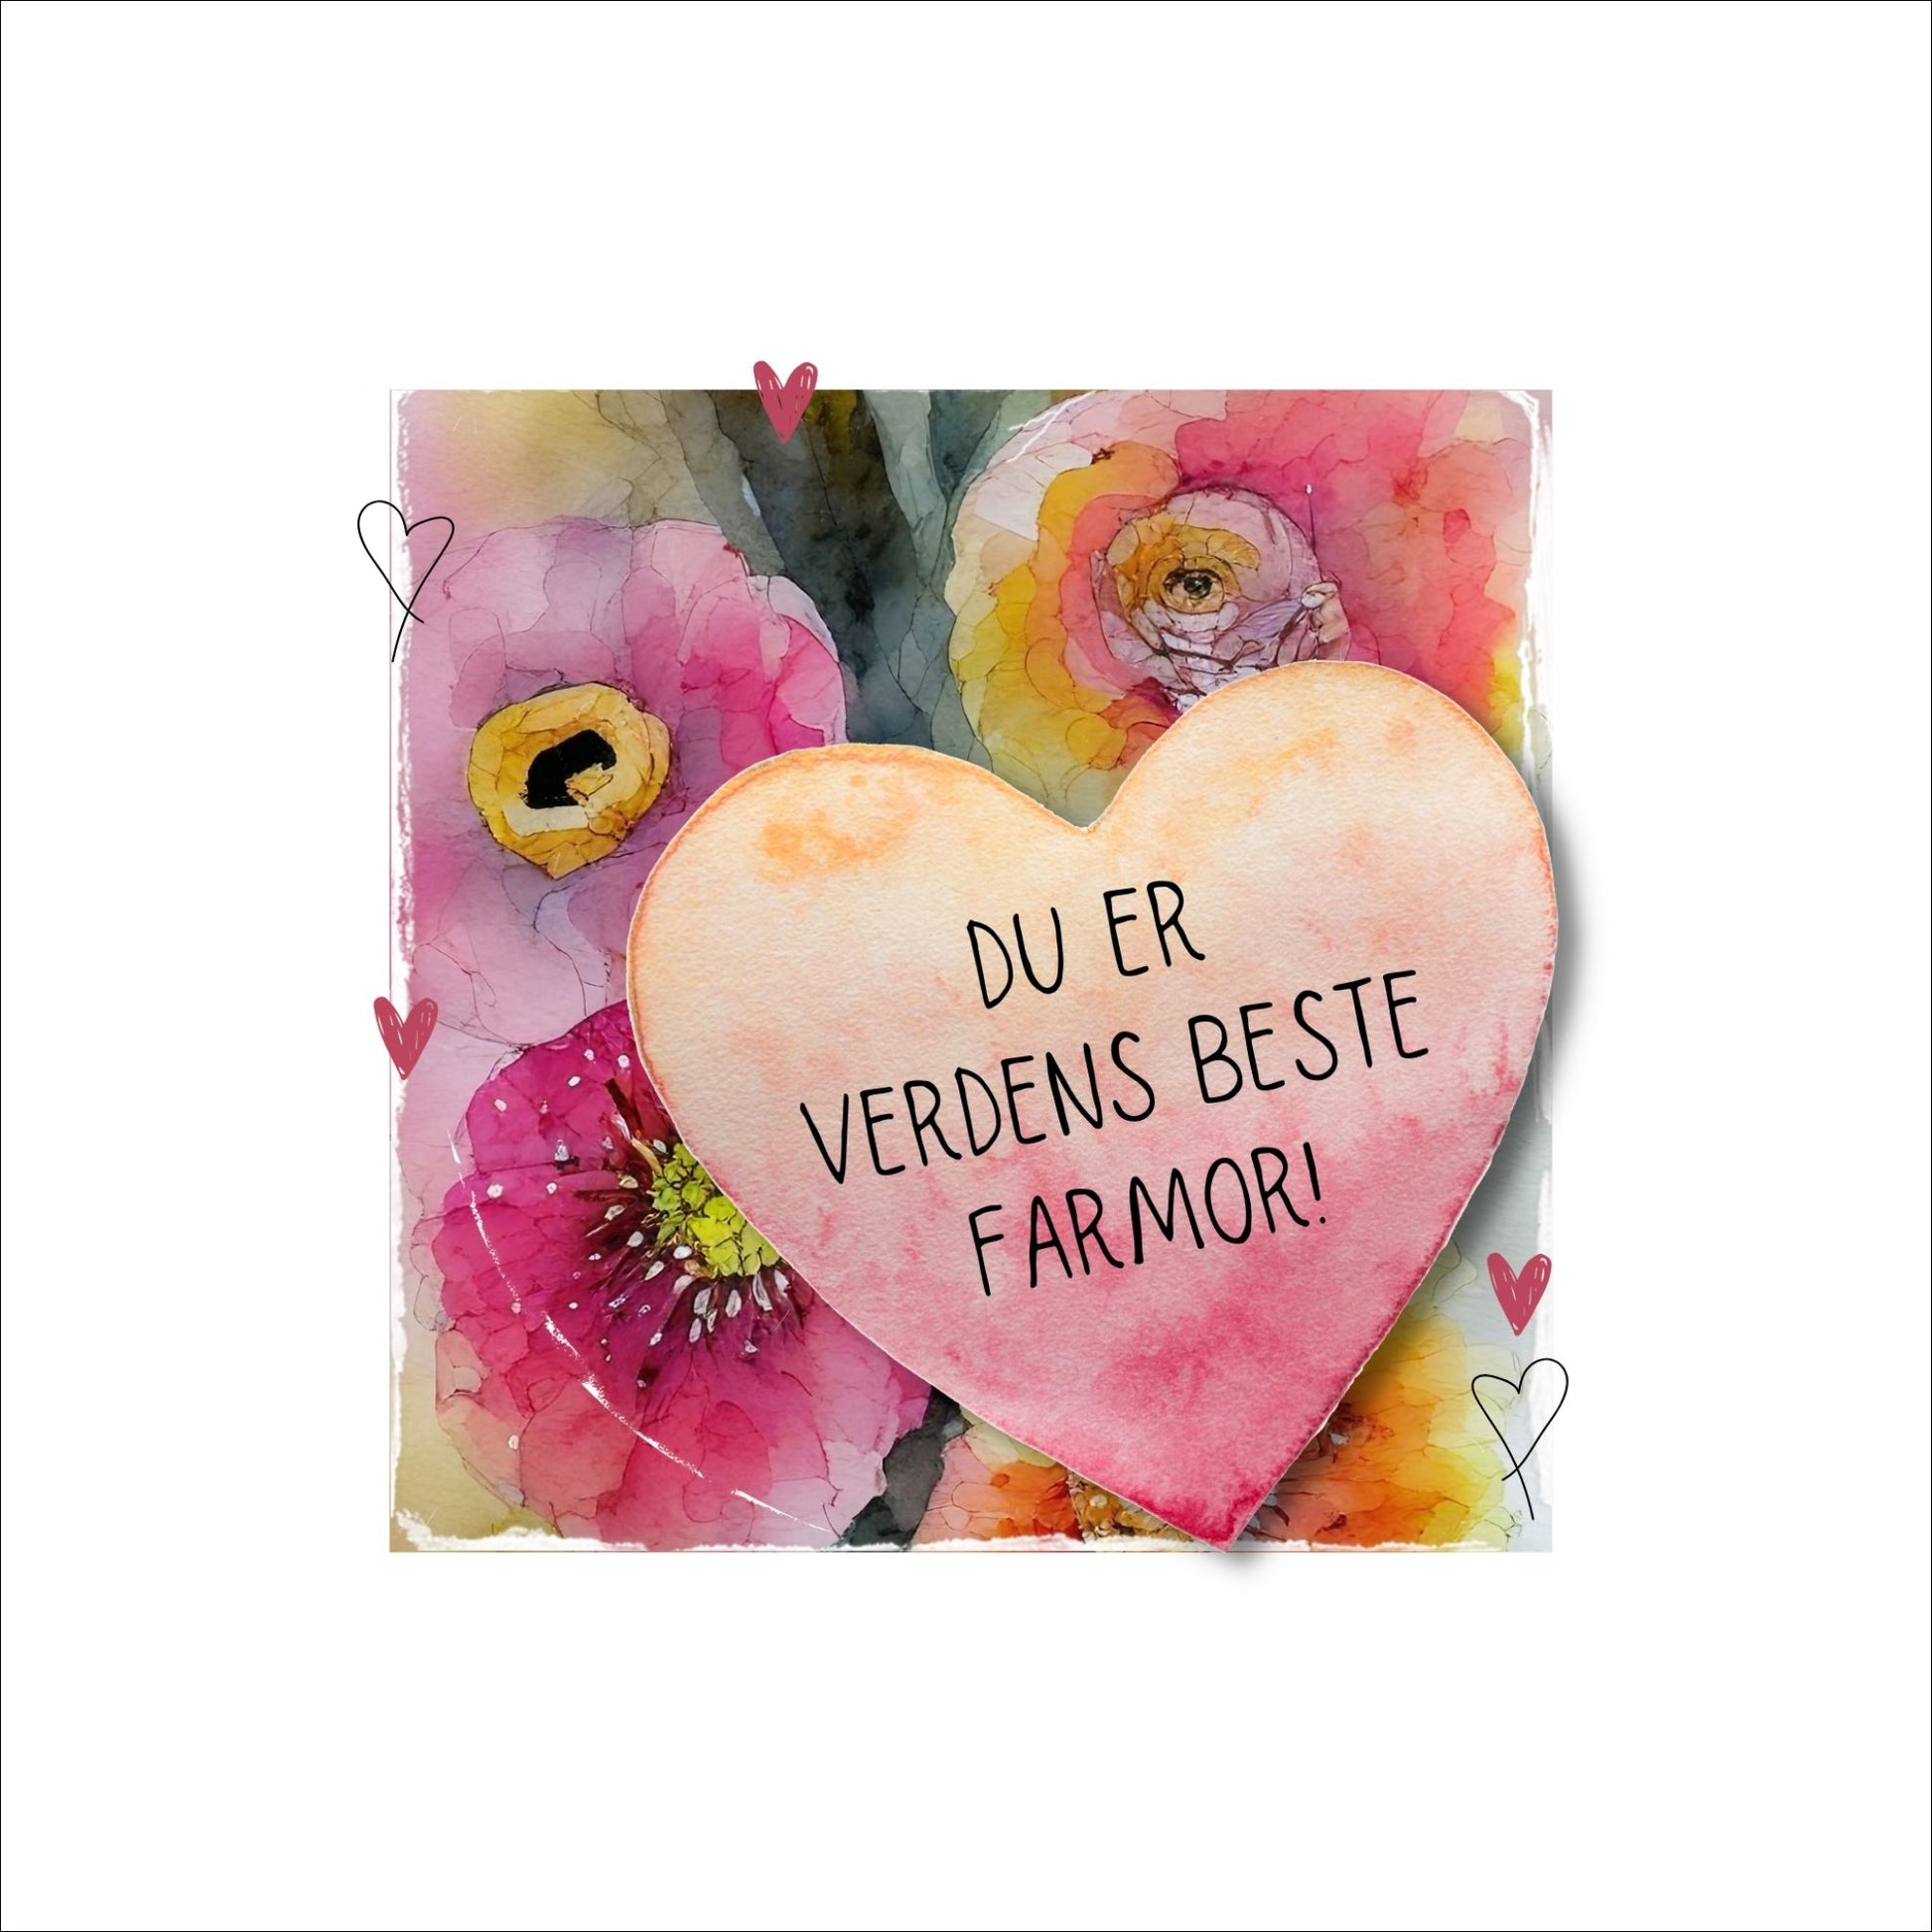 Grafisk plakat med et rosa hjerte påført tekst "Du er verdens beste farmor". Bagrunn i cerise og guloransje blomster. Kortet har en hvit kant rundt på 4 cm.